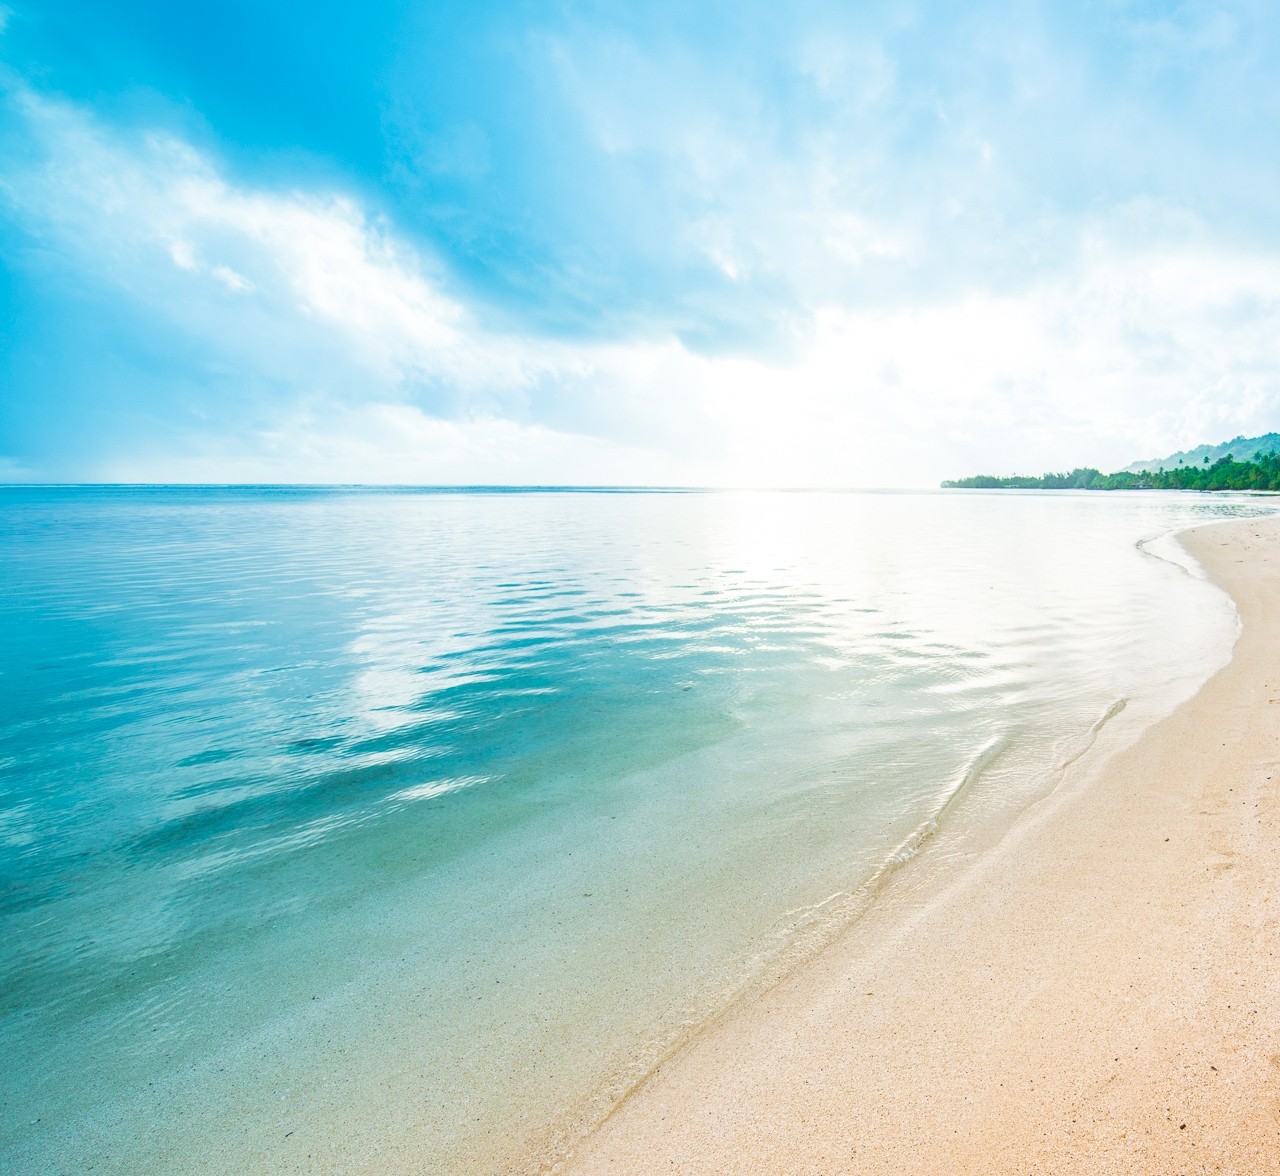 General 1280x1176 beach sand clouds sea Caribbean water peaceful nature landscape